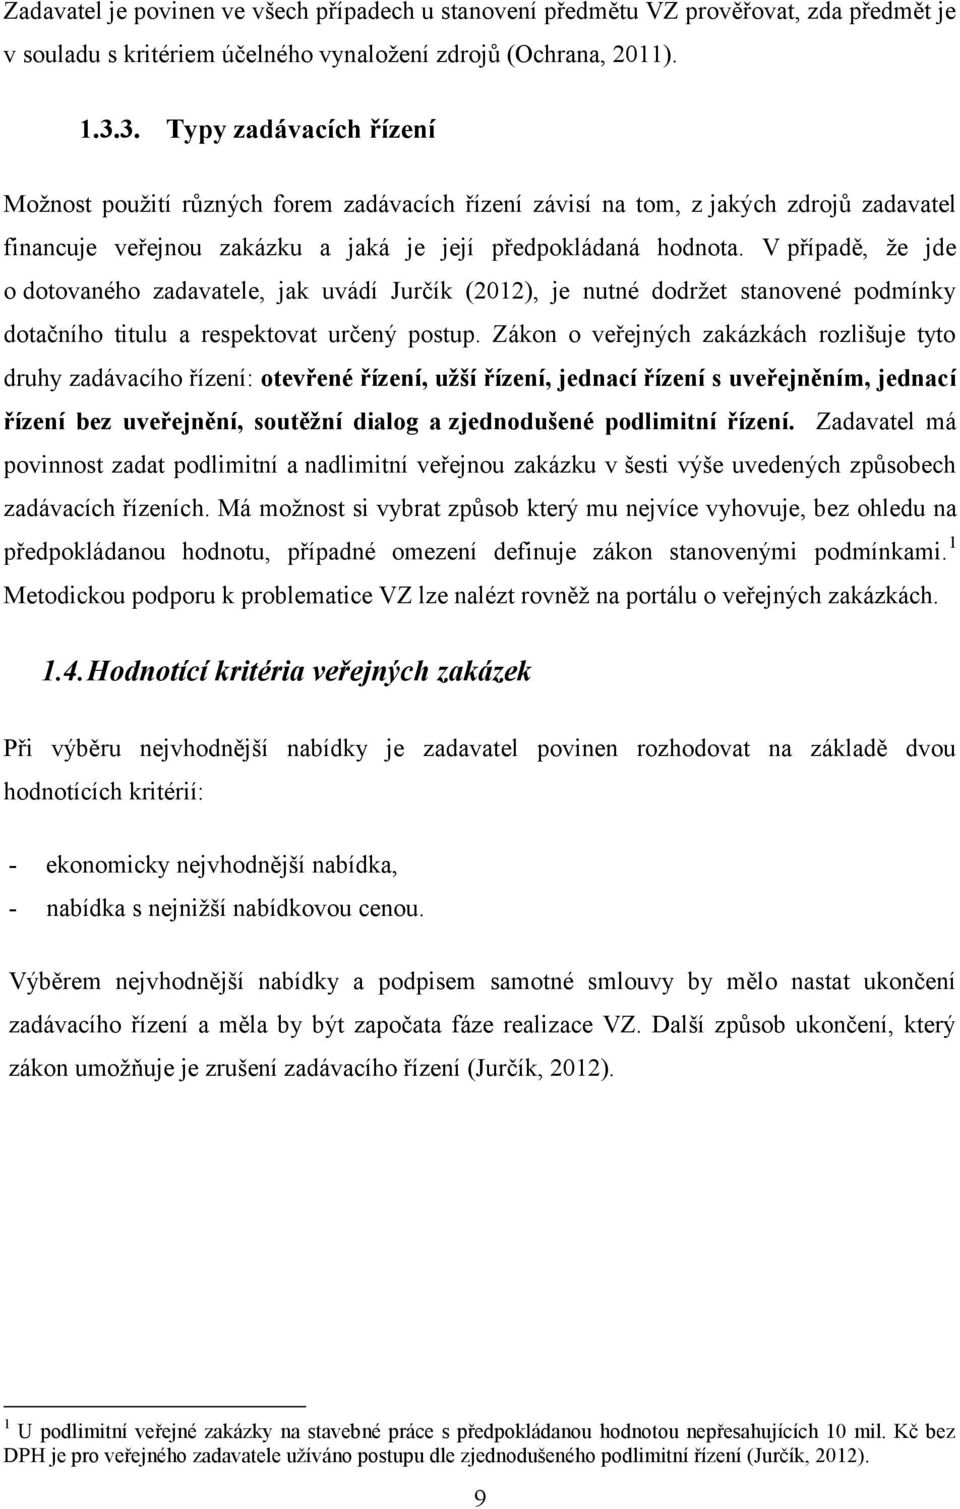 V případě, ţe jde o dotovaného zadavatele, jak uvádí Jurčík (2012), je nutné dodrţet stanovené podmínky dotačního titulu a respektovat určený postup.